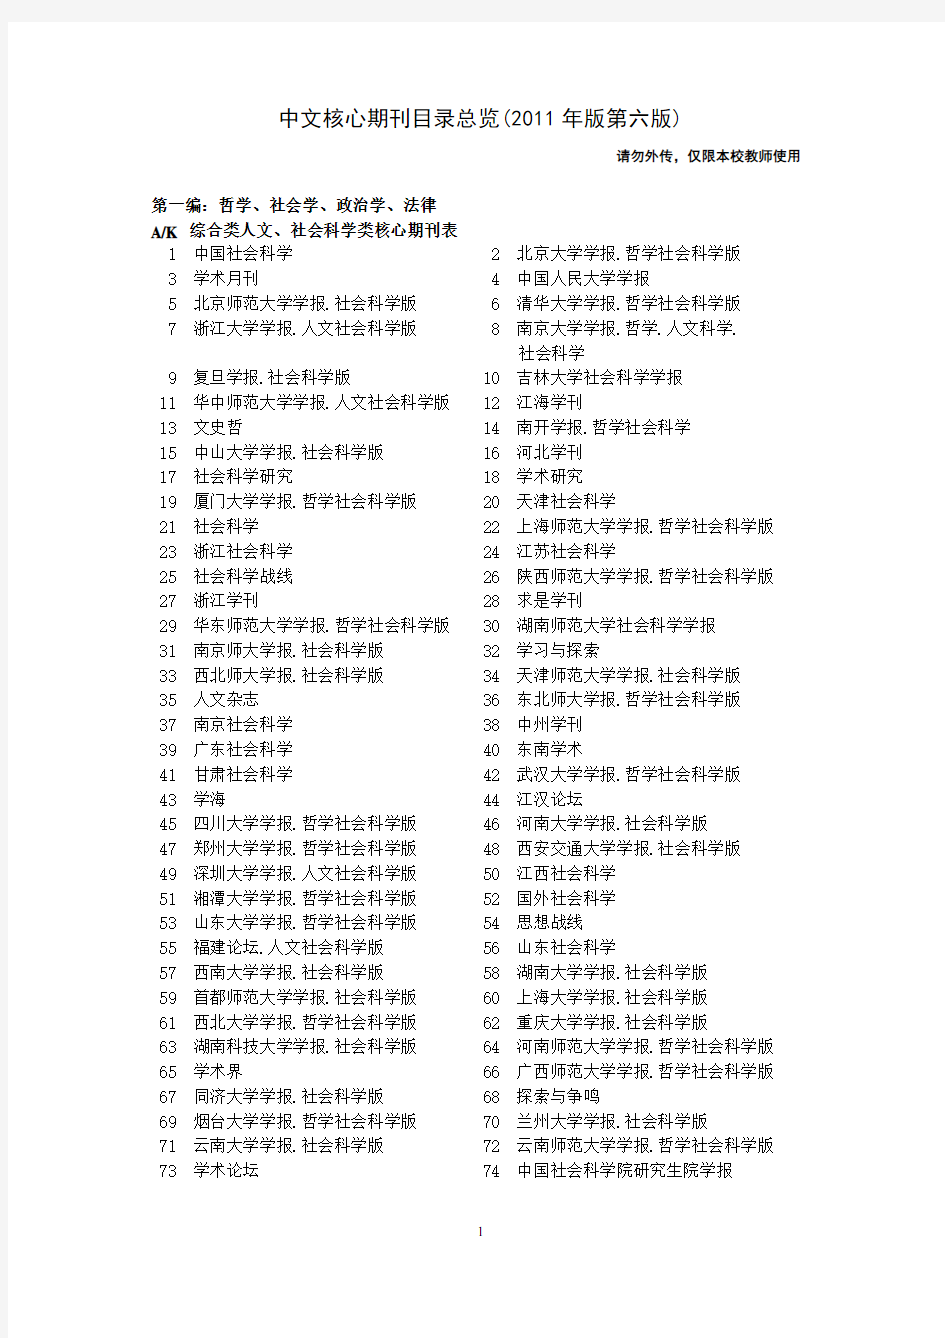 北京大学出版社《中文核心期刊目录总览》(2011年版)